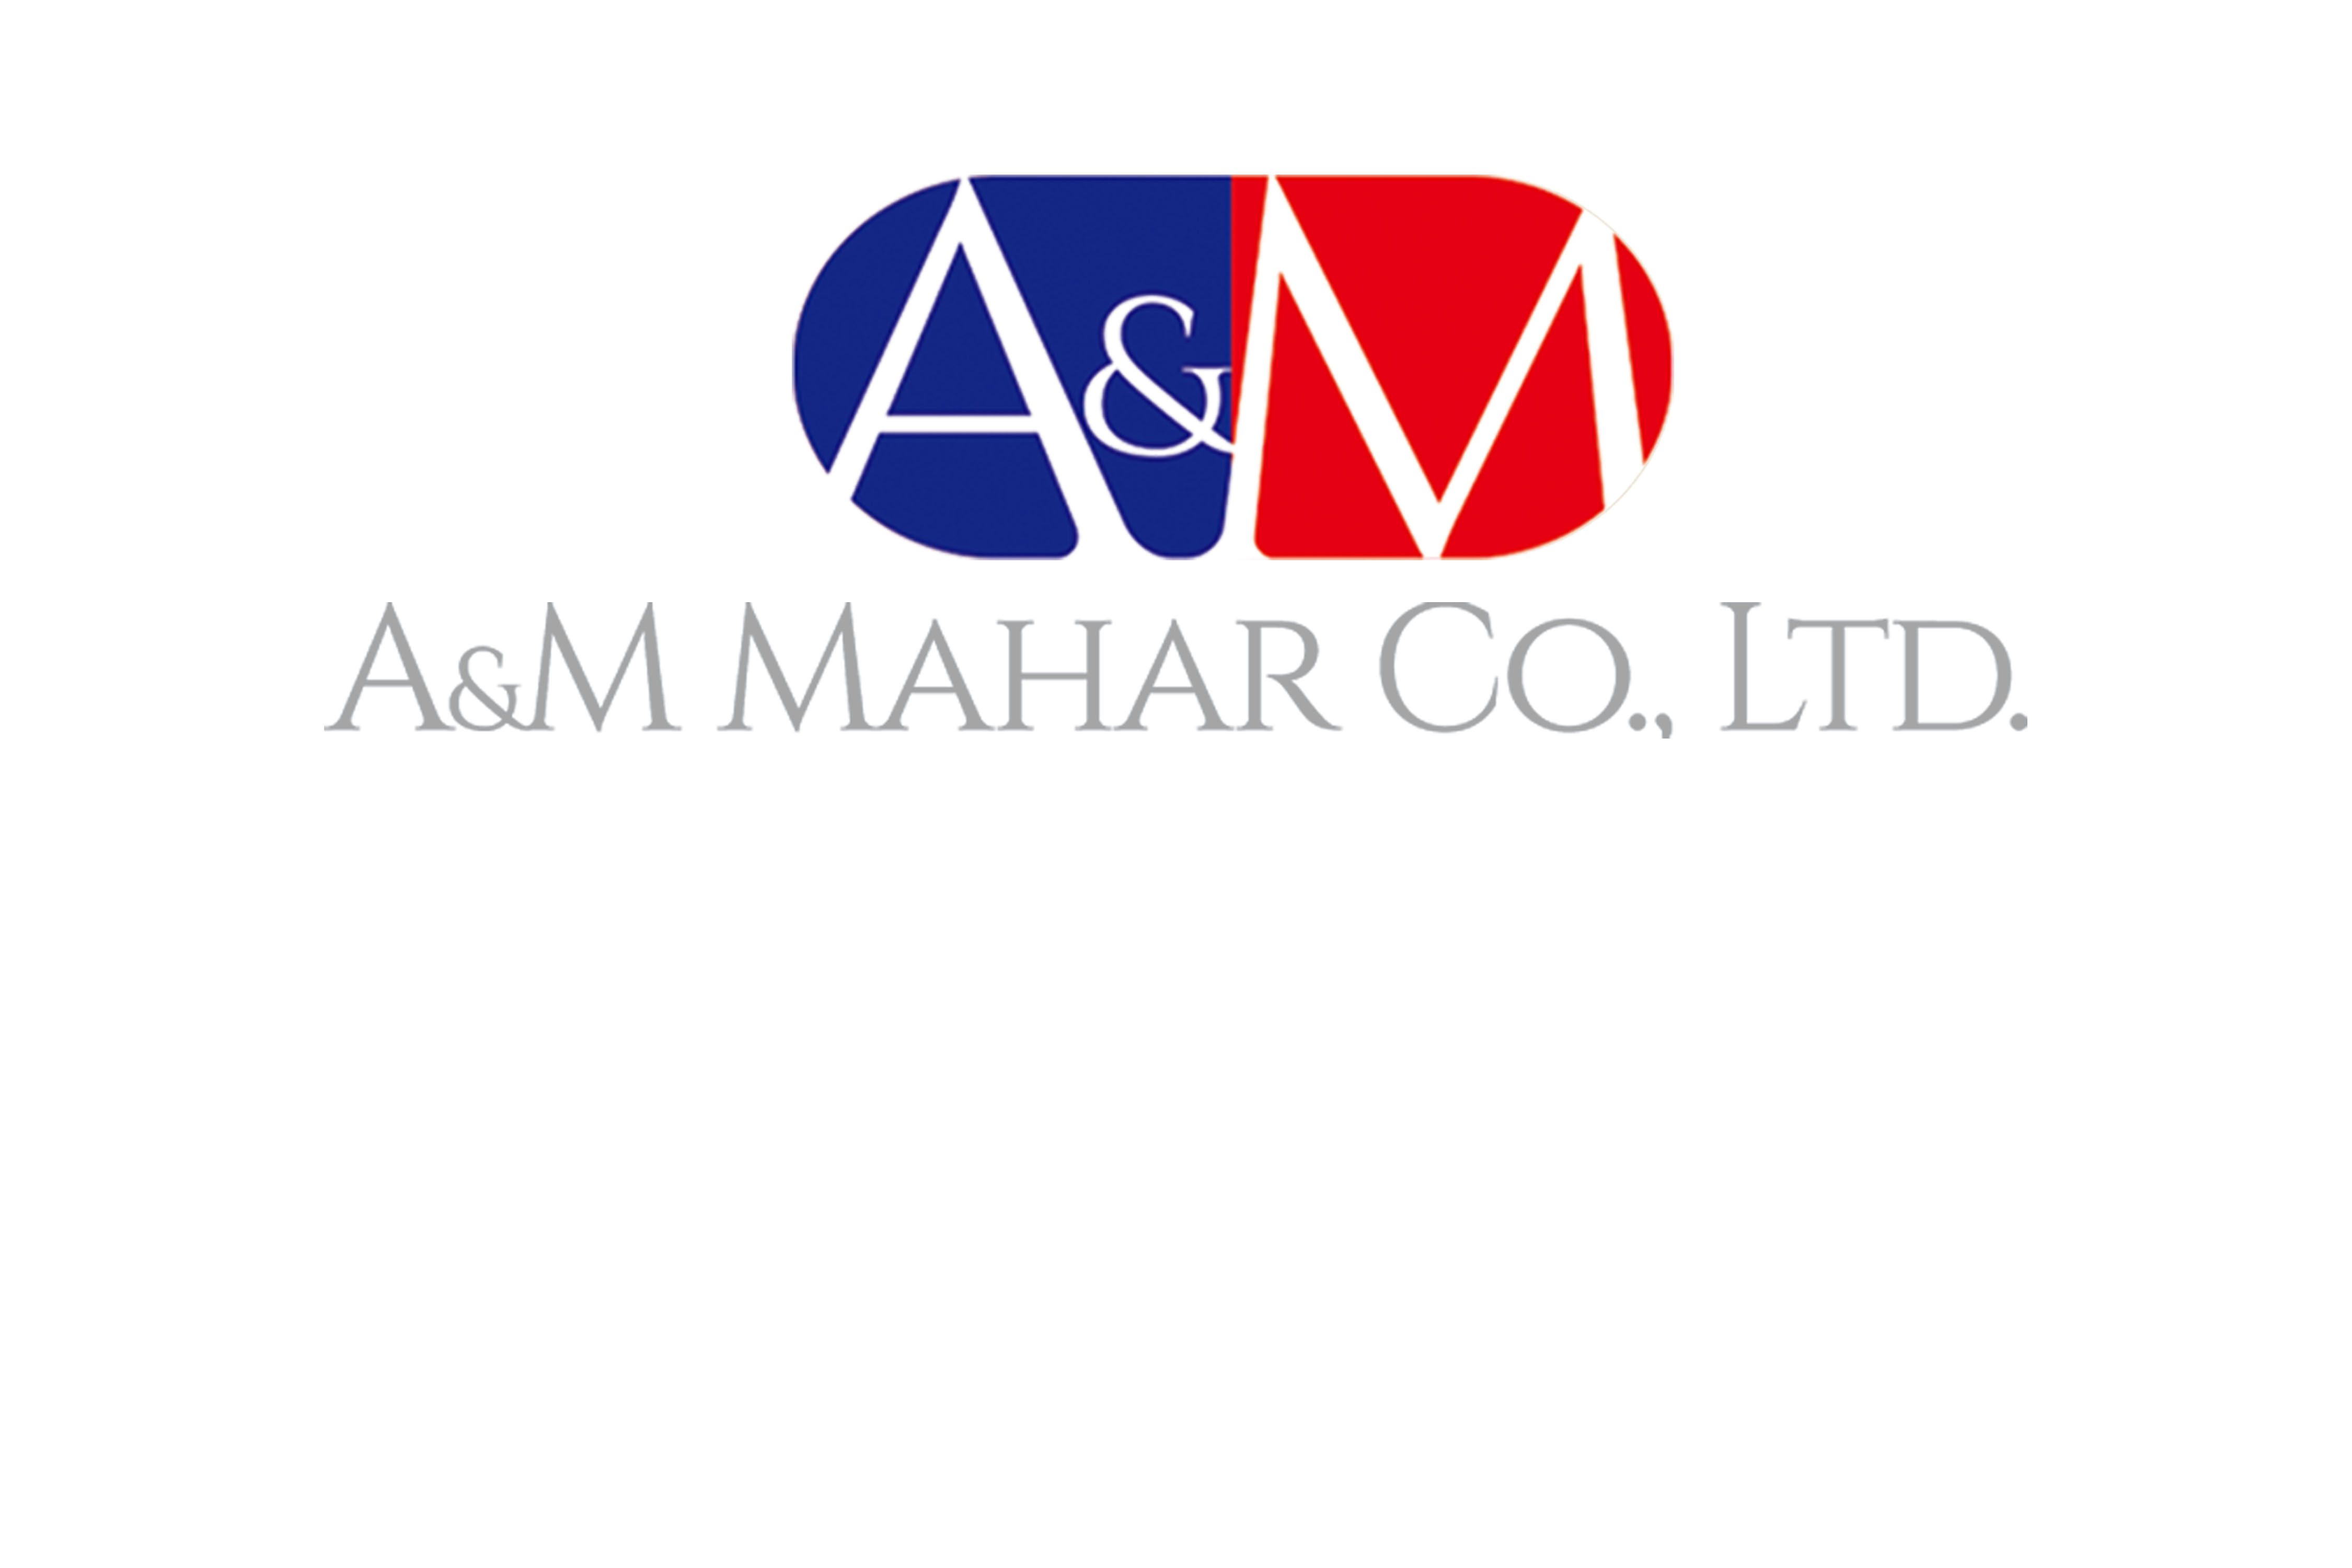 A&M Mahar Co.,Ltd.